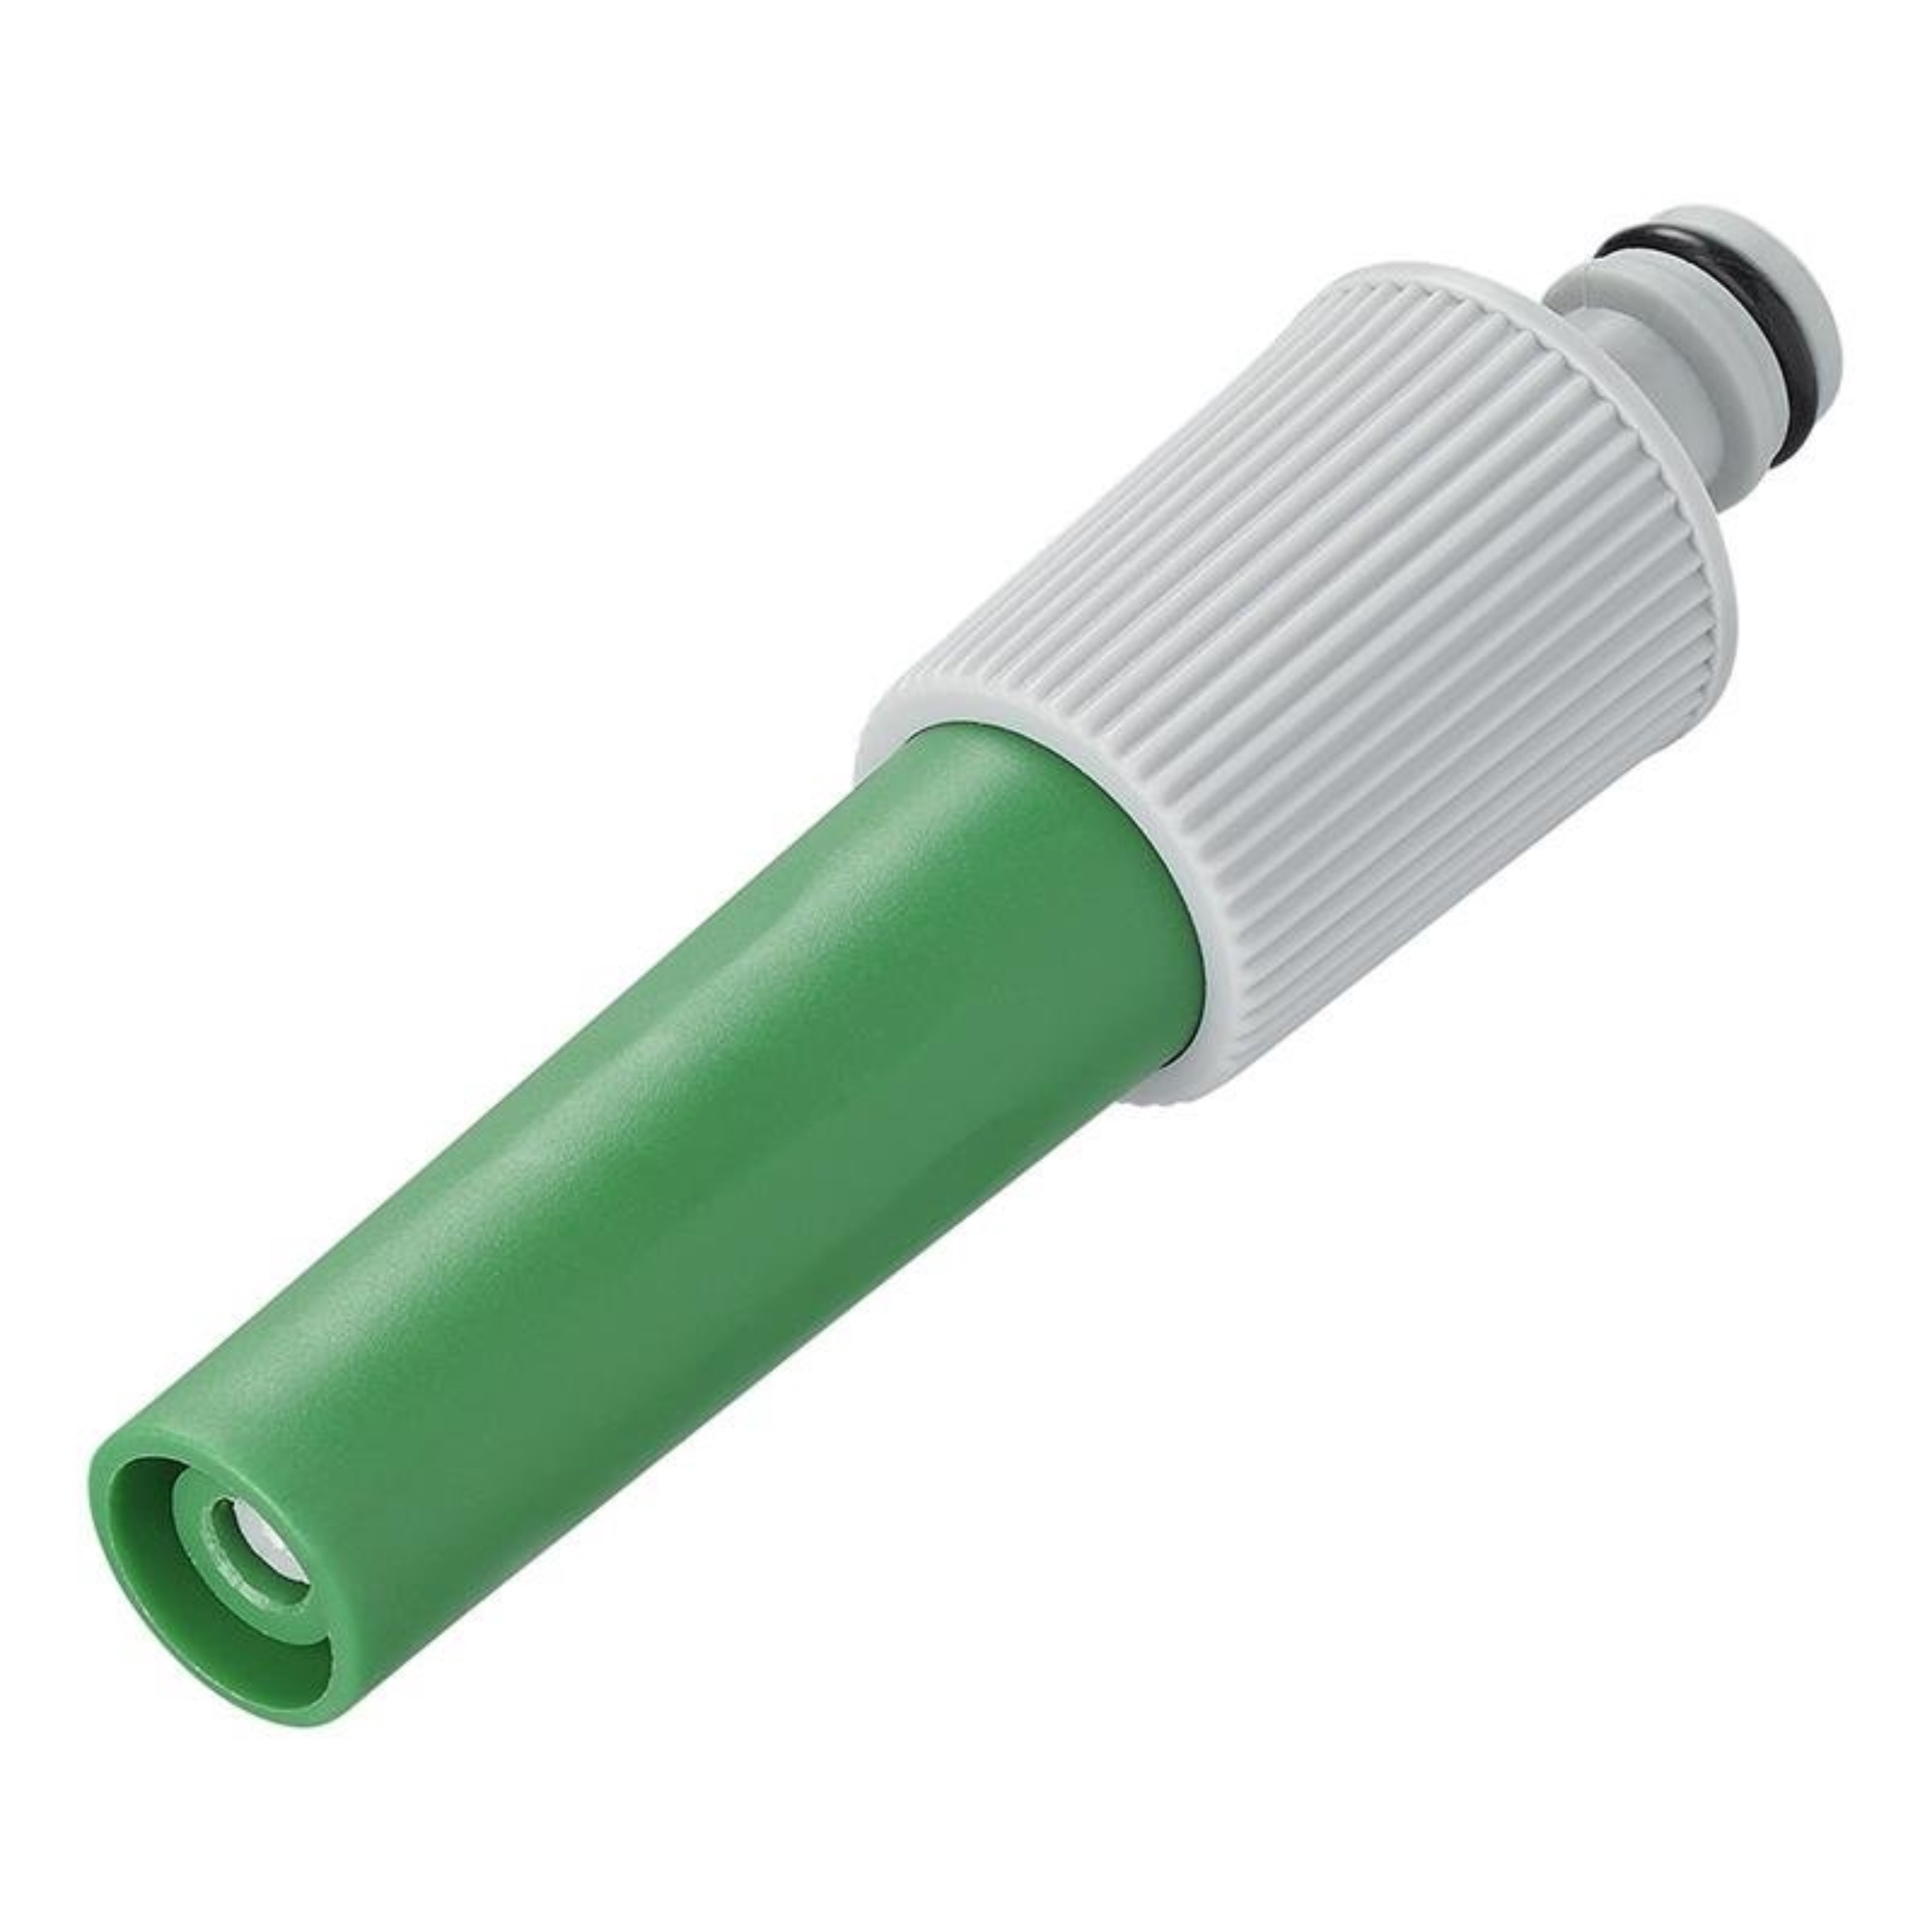 Pro Plus Tuinspuit - Spuitpistool - voor 1/2 inch Tuinslangen - Groen - Universeel